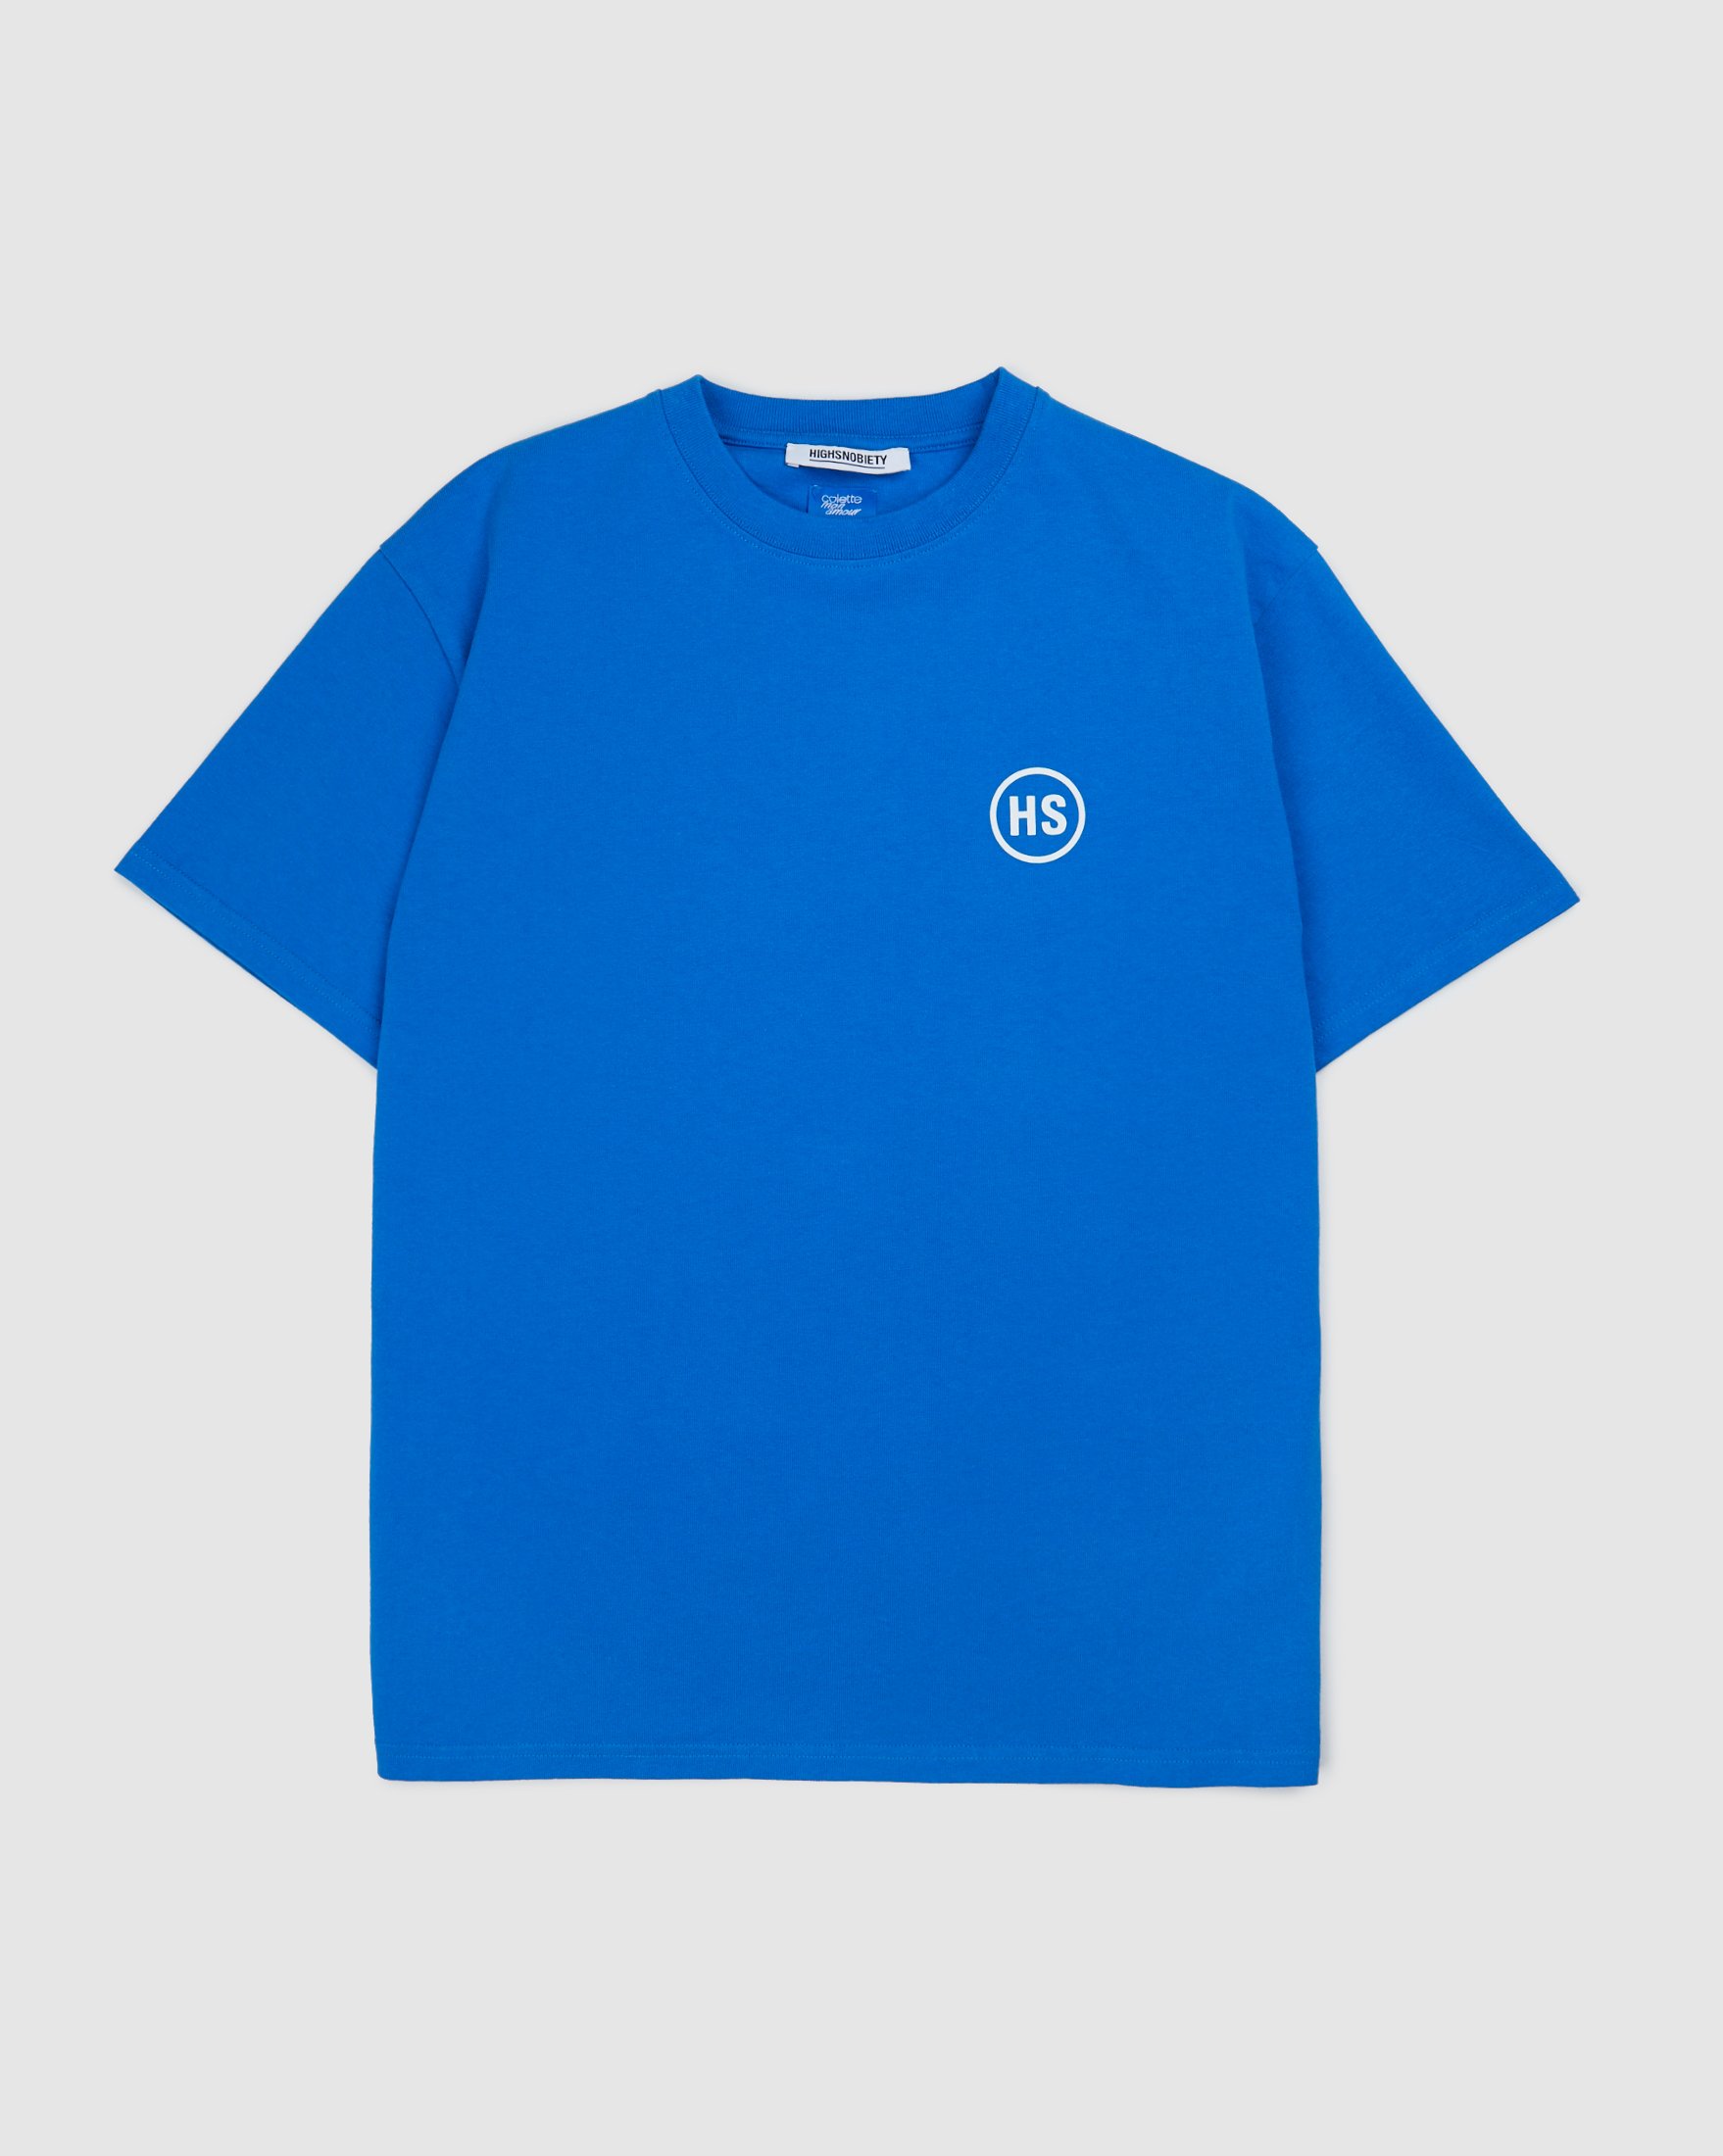 Colette Mon Amour - HS Dots T-Shirt Blue - Clothing - Blue - Image 2